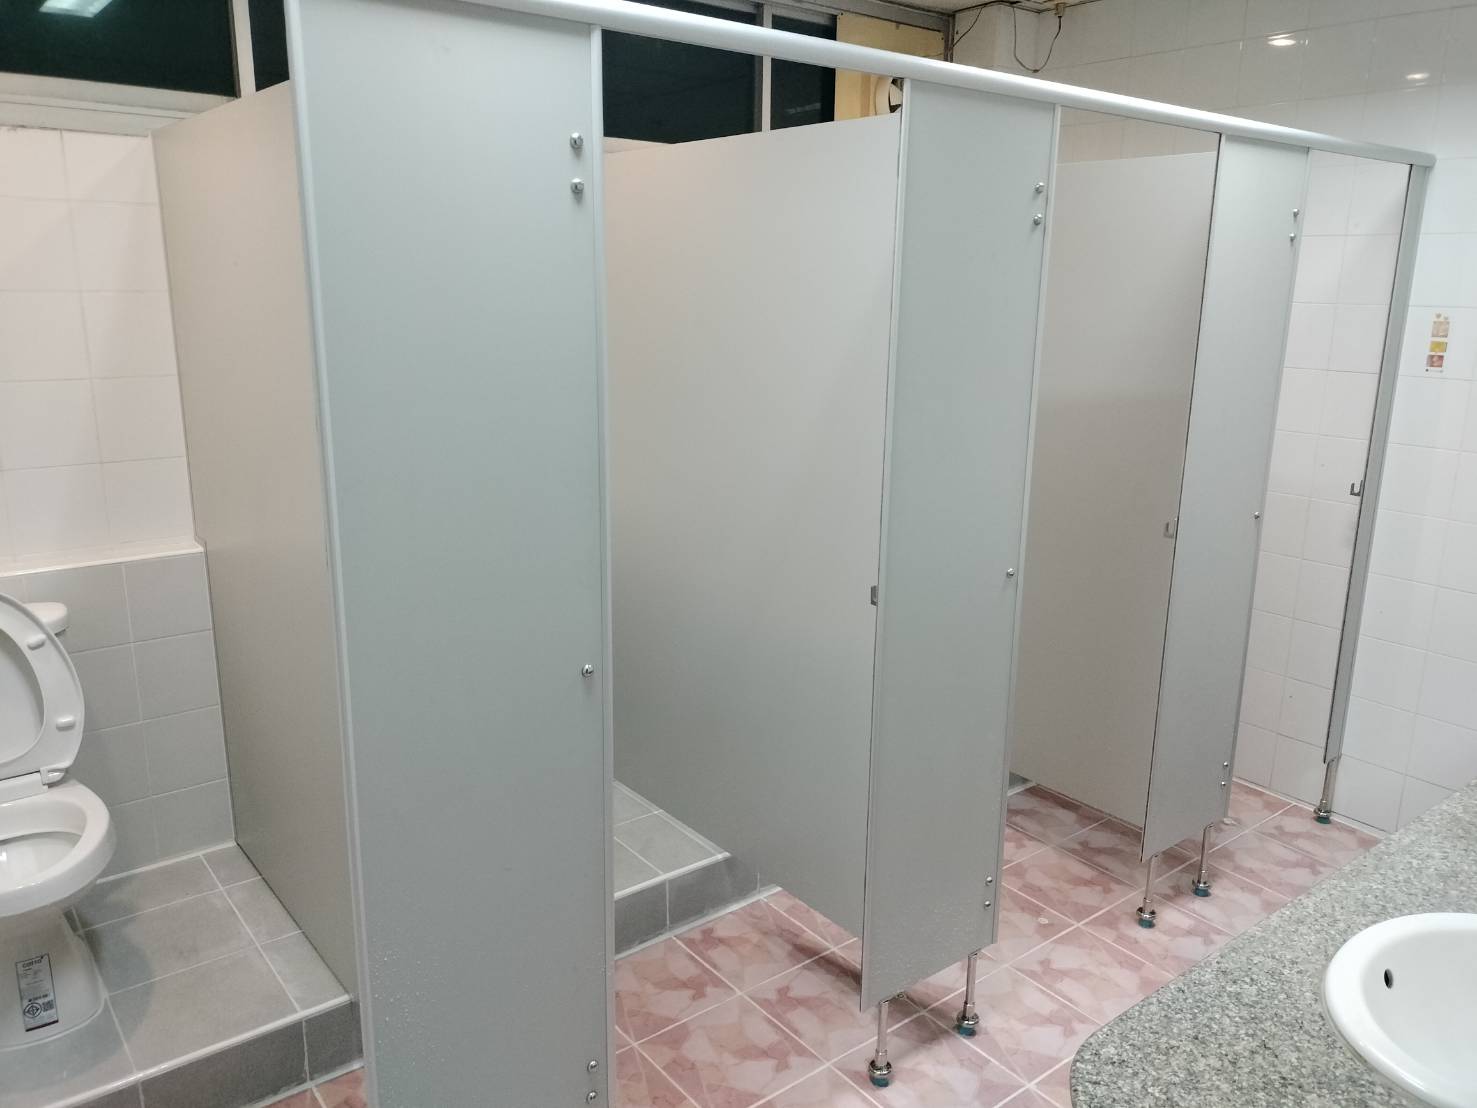 ติดตั้งผนังกั้นห้องน้ำ บริษัท ไทยเครื่องชั่ง จำกัด นครปฐม สีเทา 10 มิล